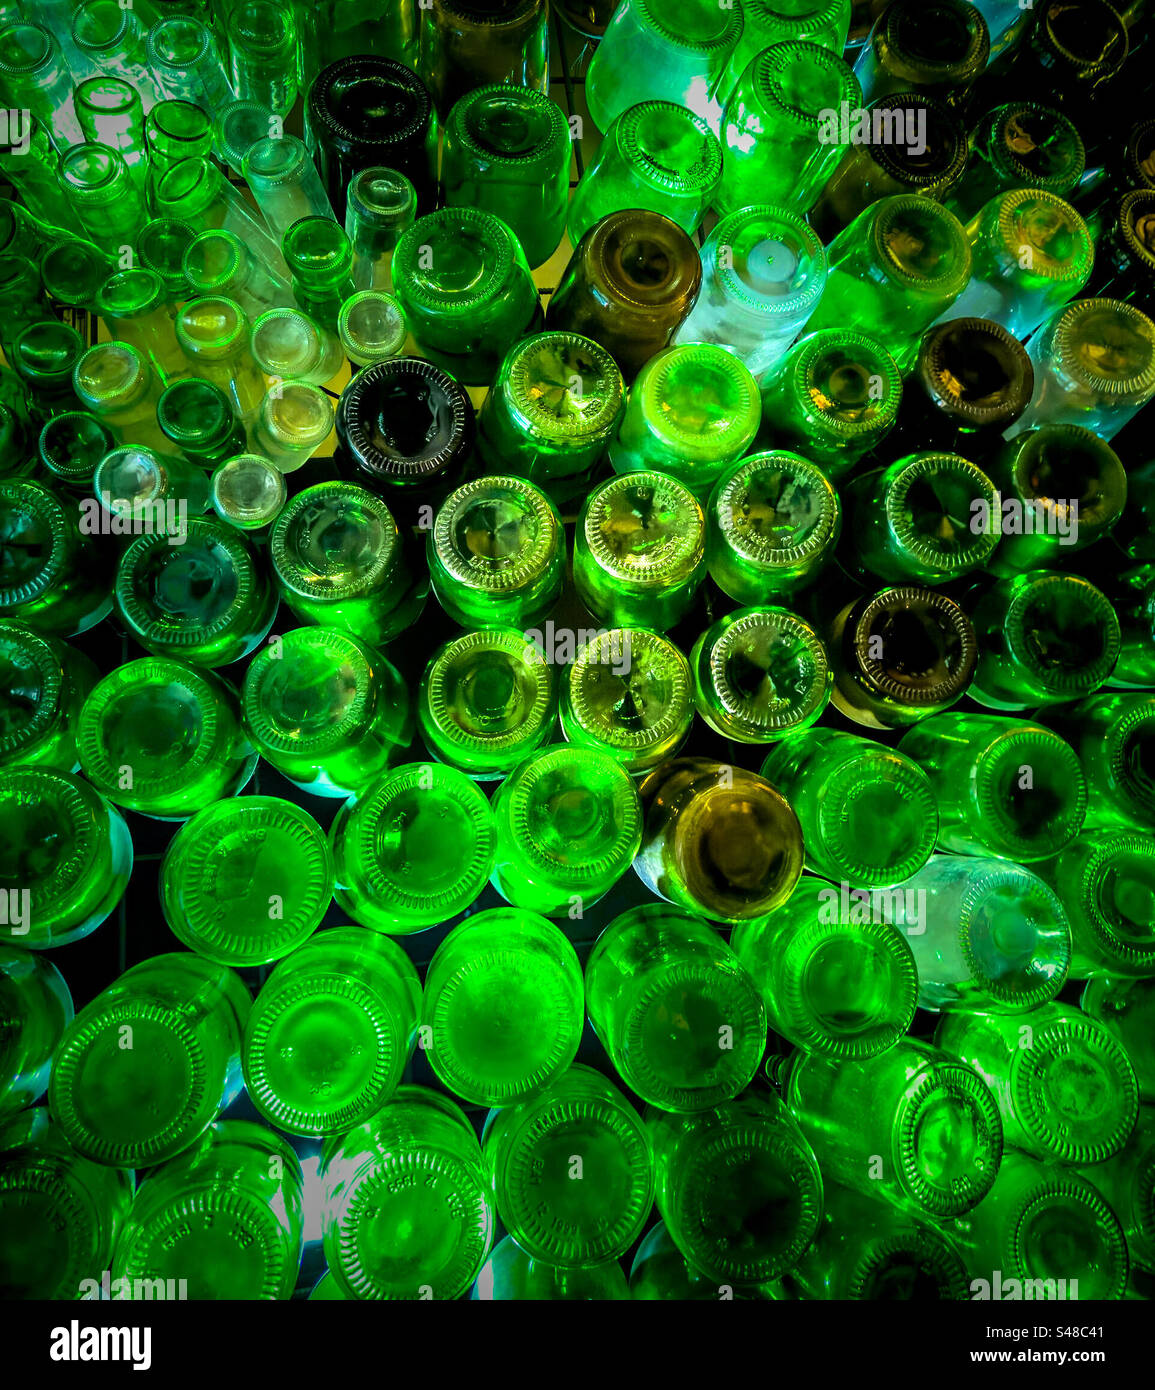 Reciclar Botellas De Vidrio: Carga Tu Móvil Por Casi Un Año